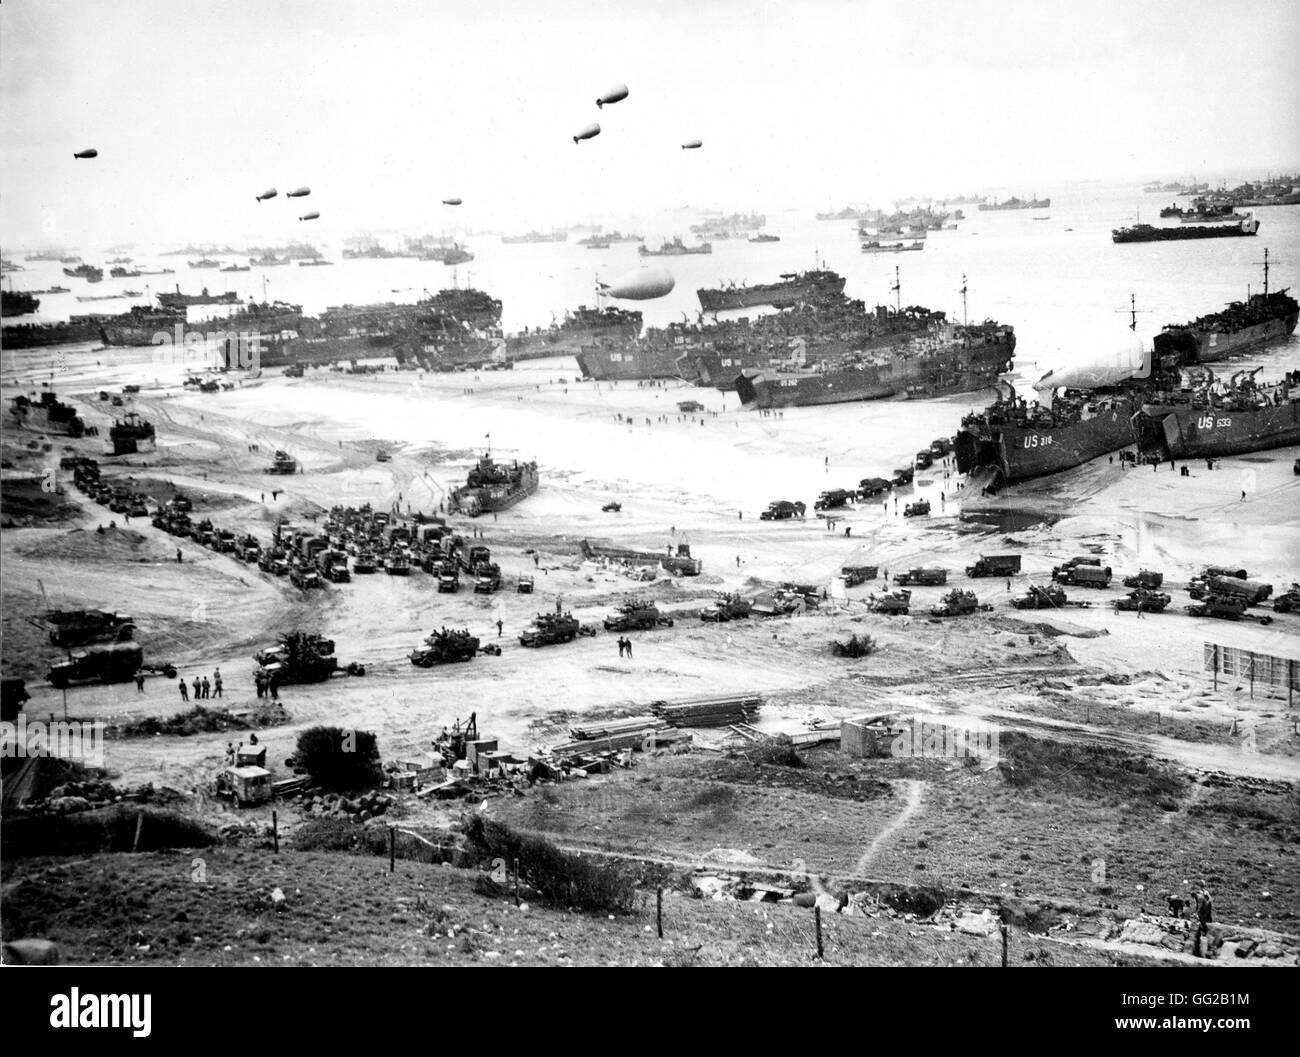 Débarquement des troupes alliées sur les plages de Normandie, France 6 juin 1944 Seconde Guerre mondiale Guerre mondiale archives nationales, Washington Banque D'Images